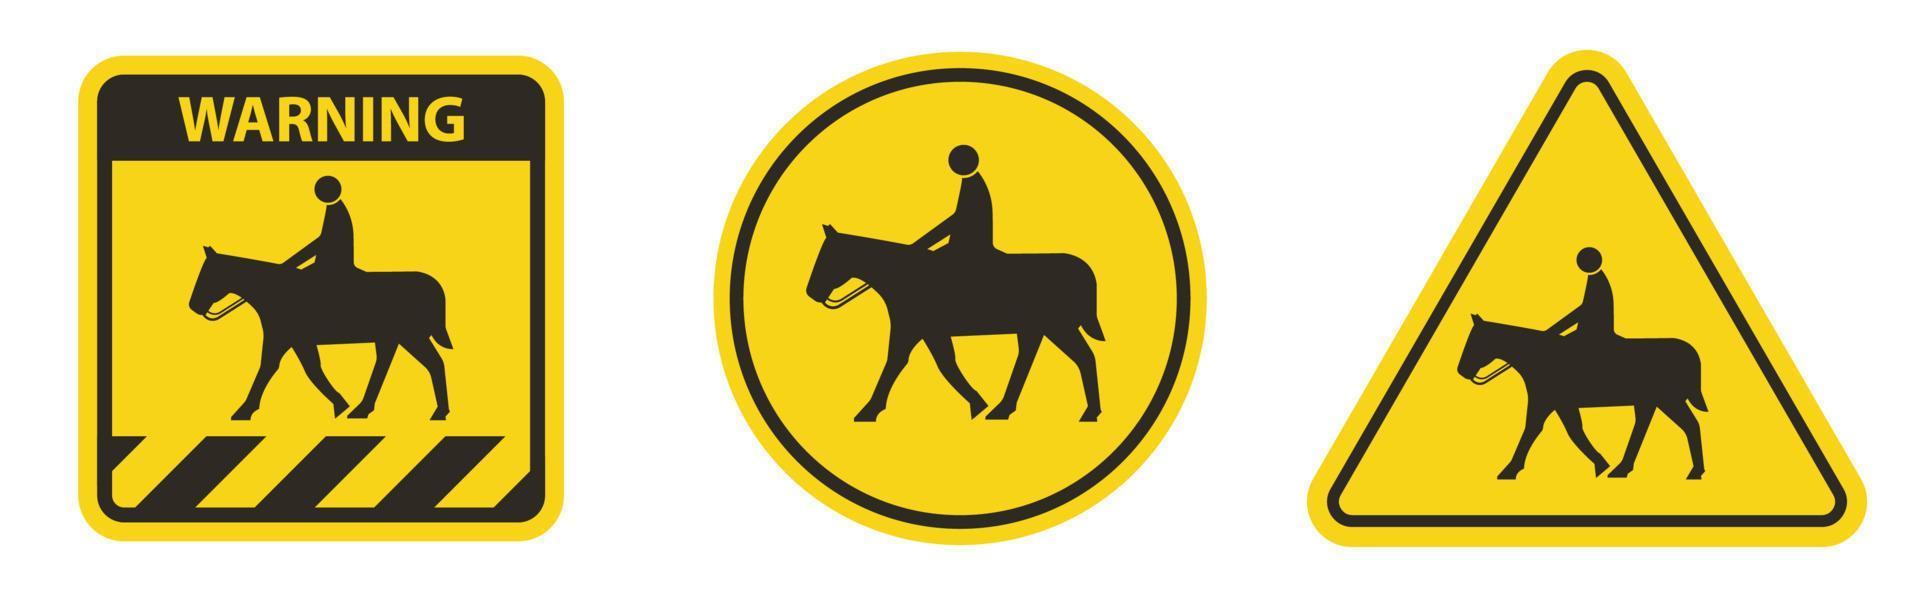 Pferdesymbolzeichen auf weißem Hintergrund vektor